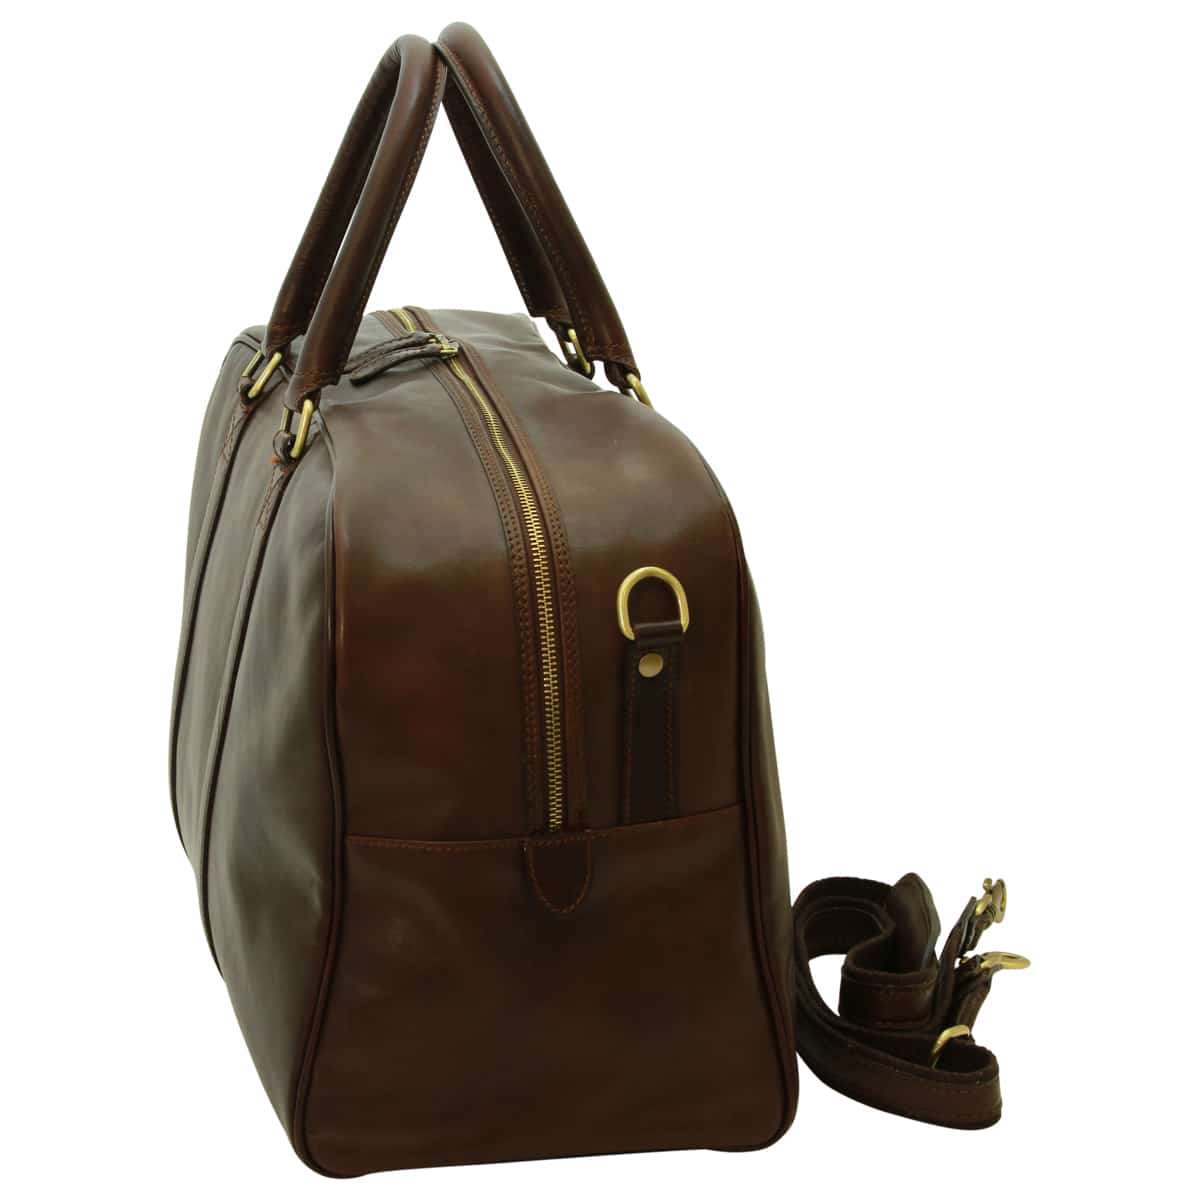 Soft Calfskin Leather Travel Bag - Dark Brown | 030591TM UK | Old Angler Firenze